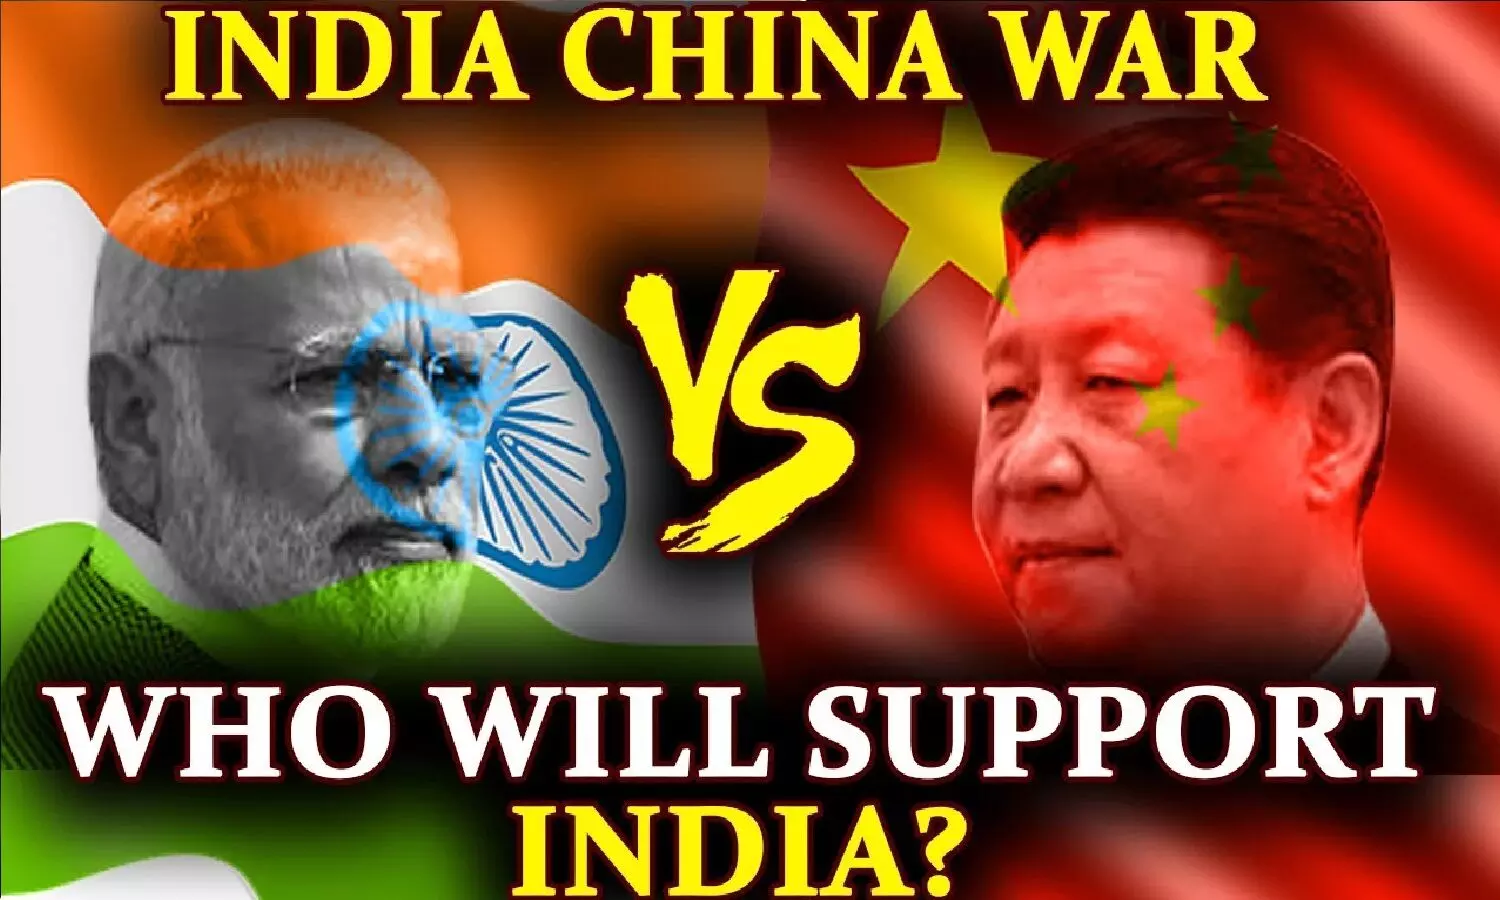 अगर भारत चीन के बीच युद्ध शुरू हो जाए तो इंडिया का कौन-कौन से देश साथ देंगे